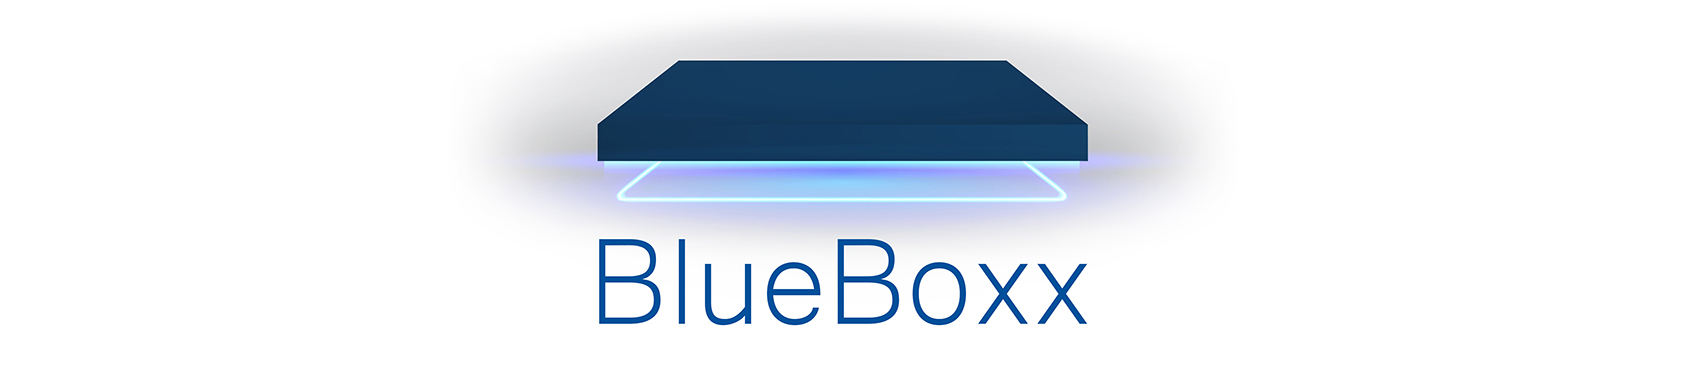 Blueboxx